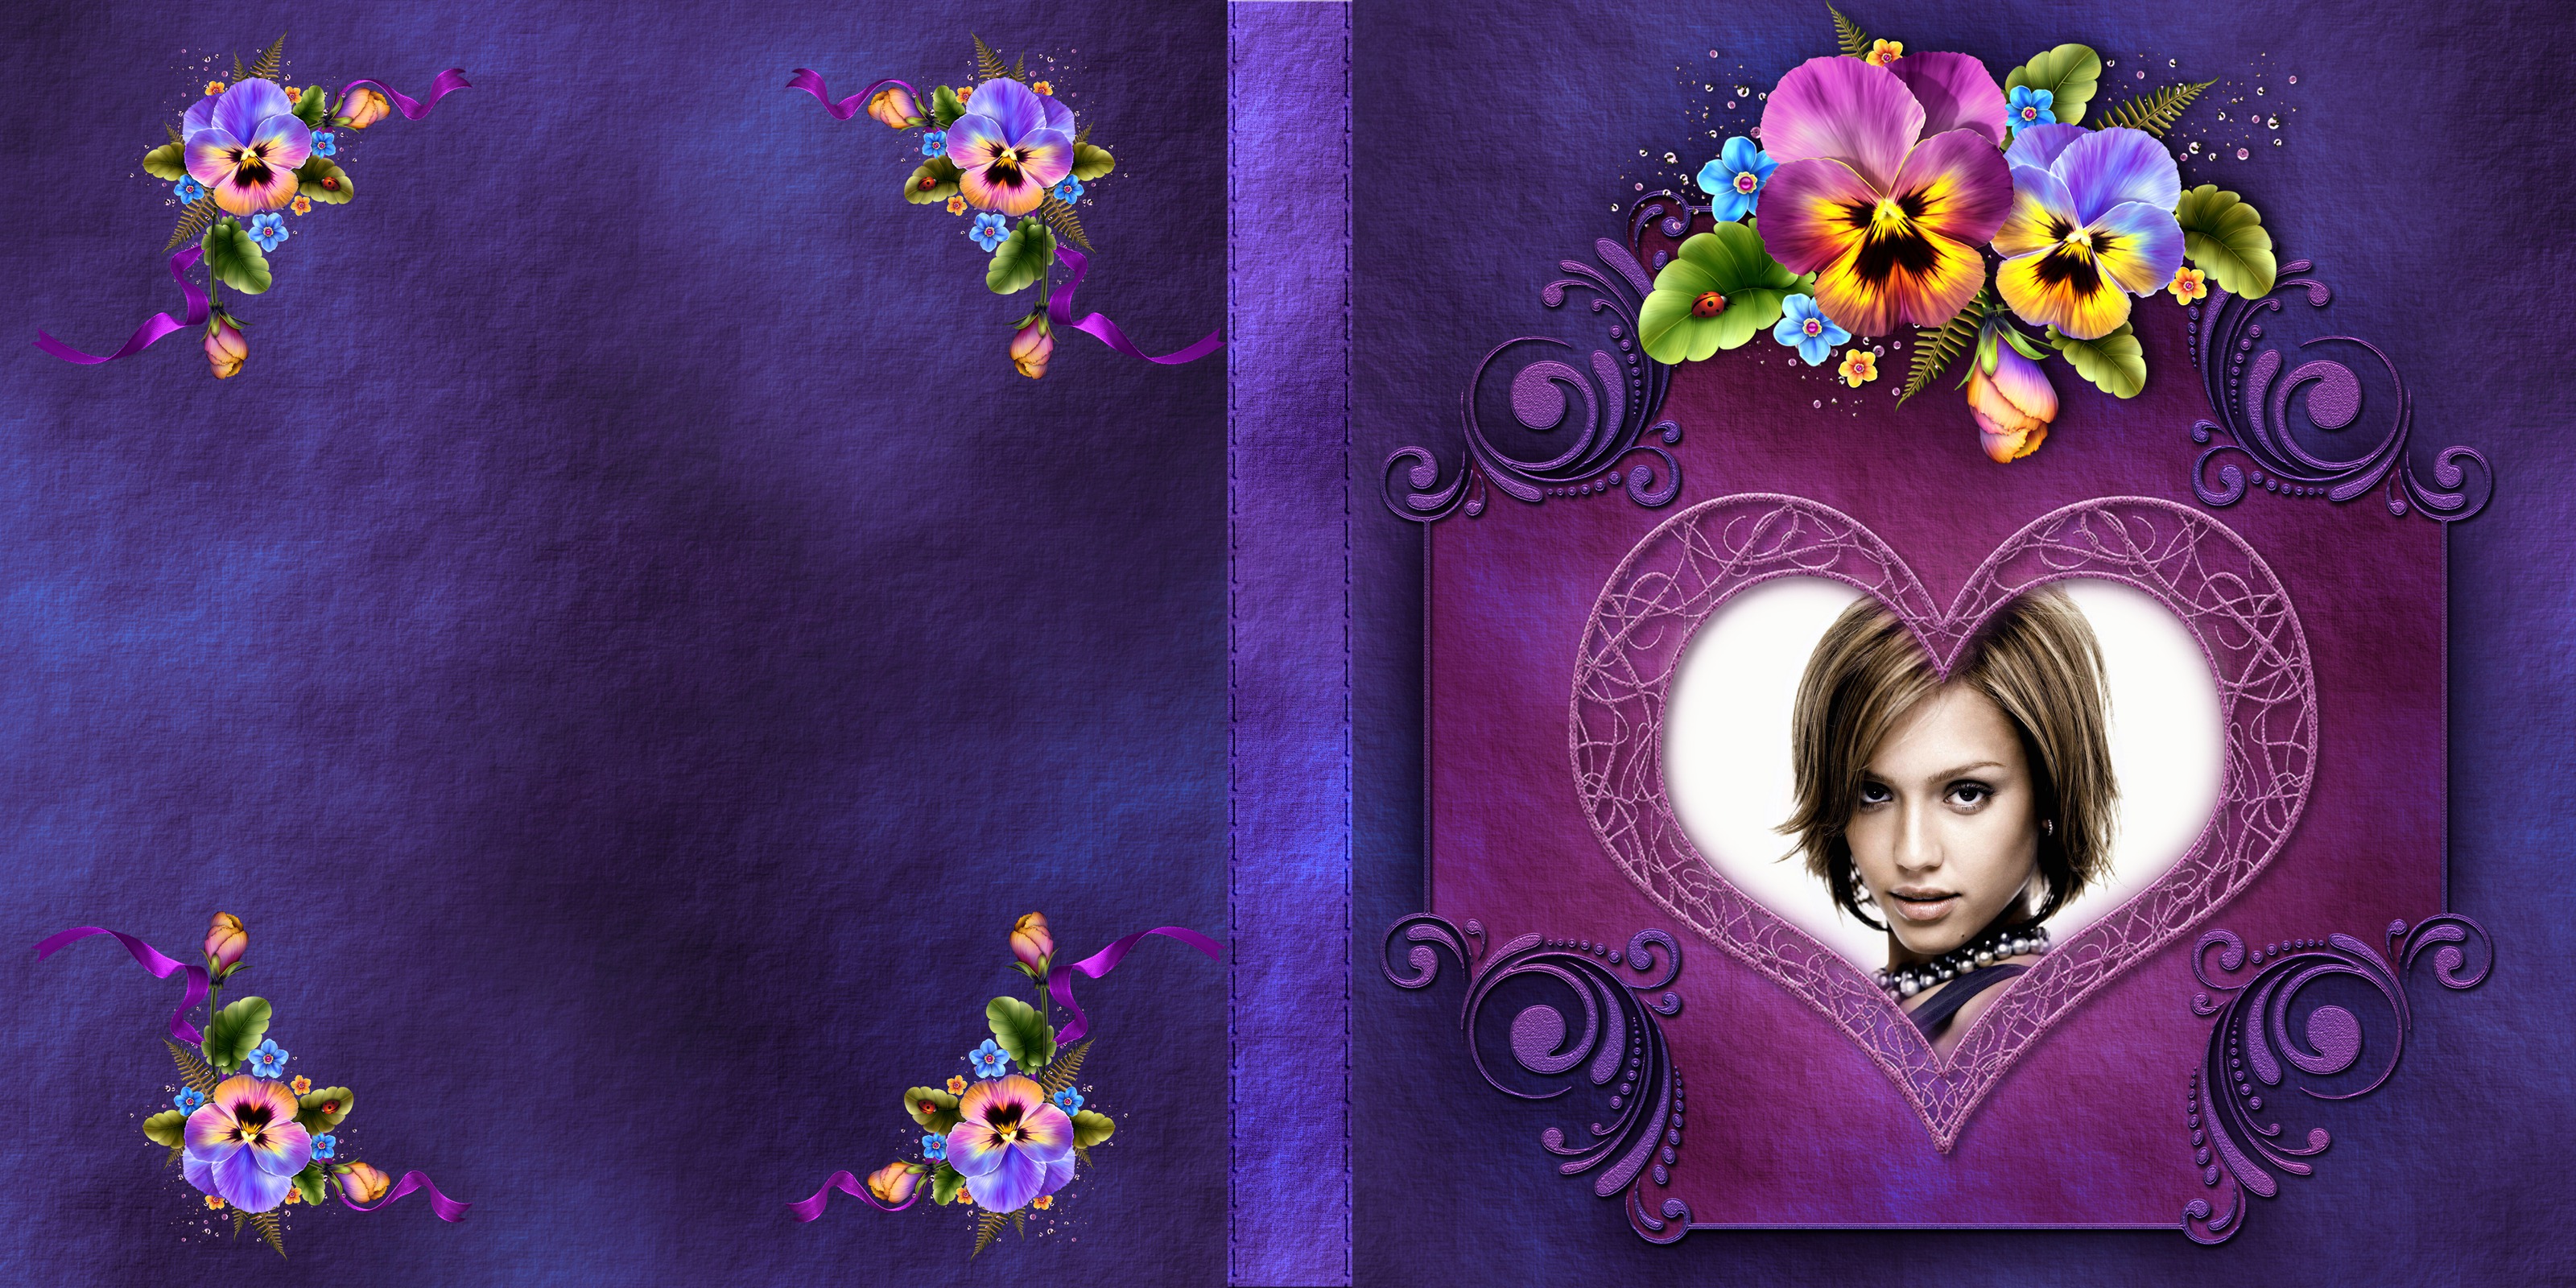 Couverture de livre violette avec fleurs #1 Montage photo